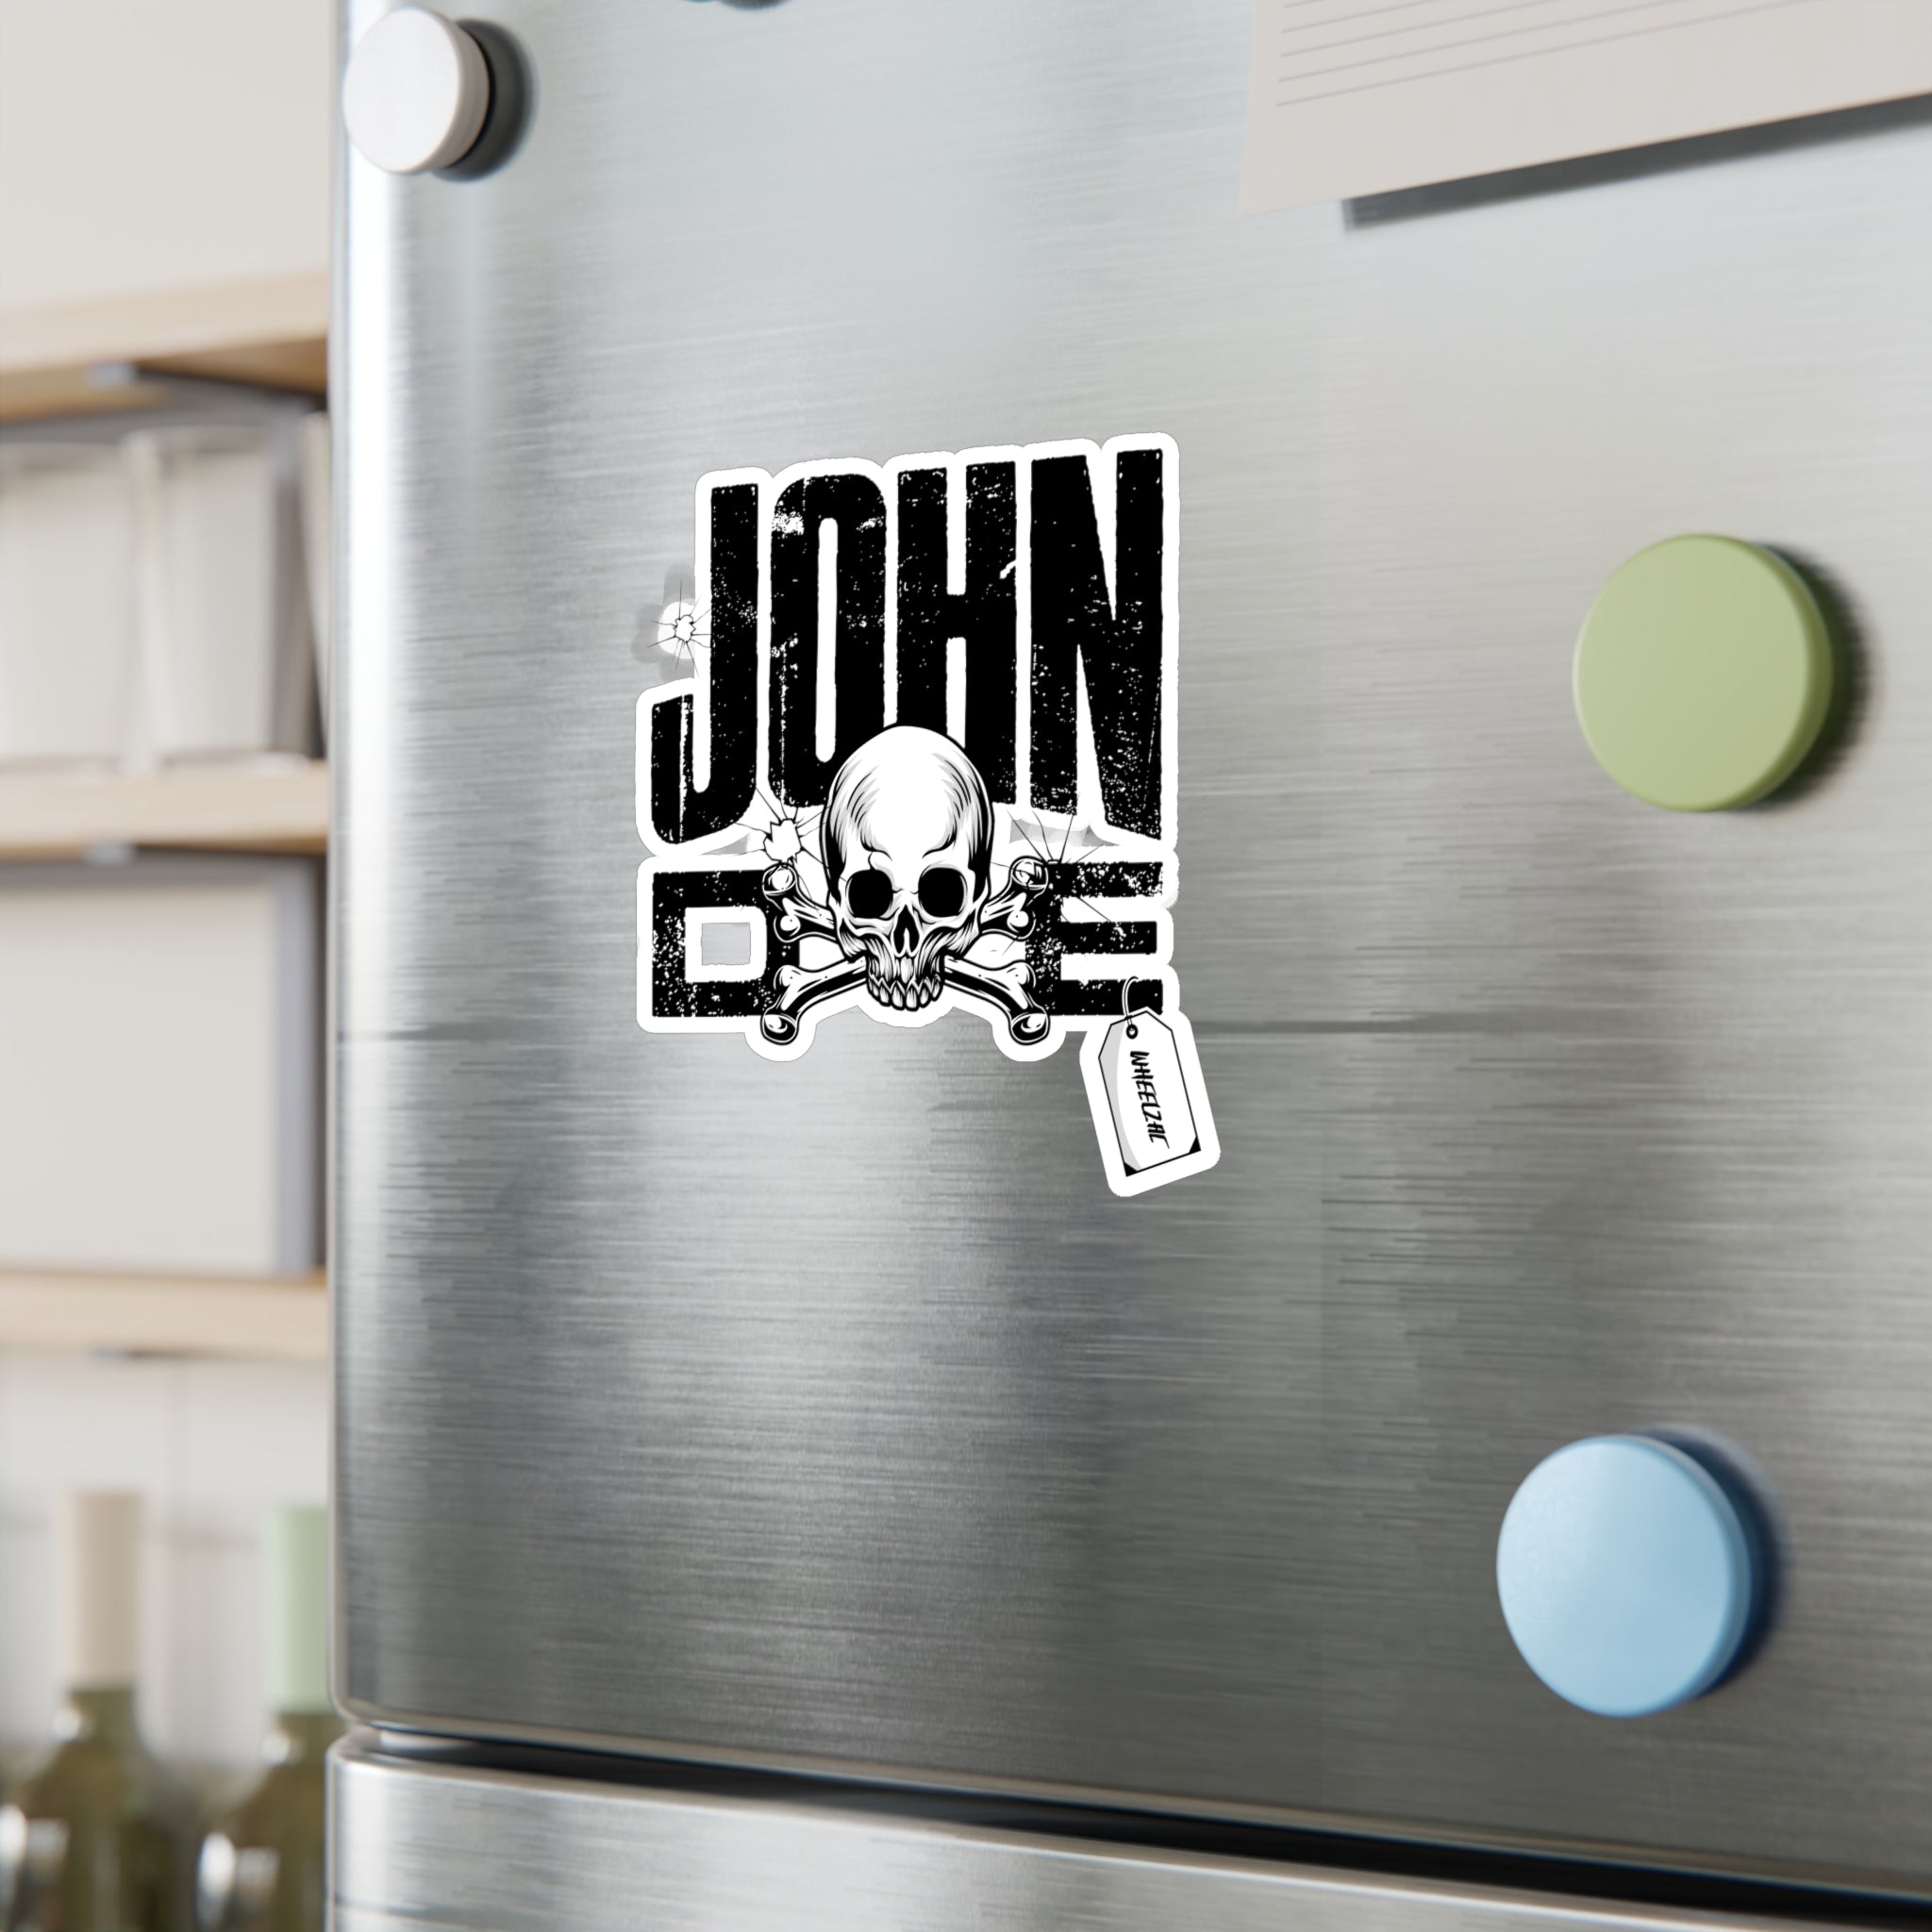 John Doe Vinyl Decals